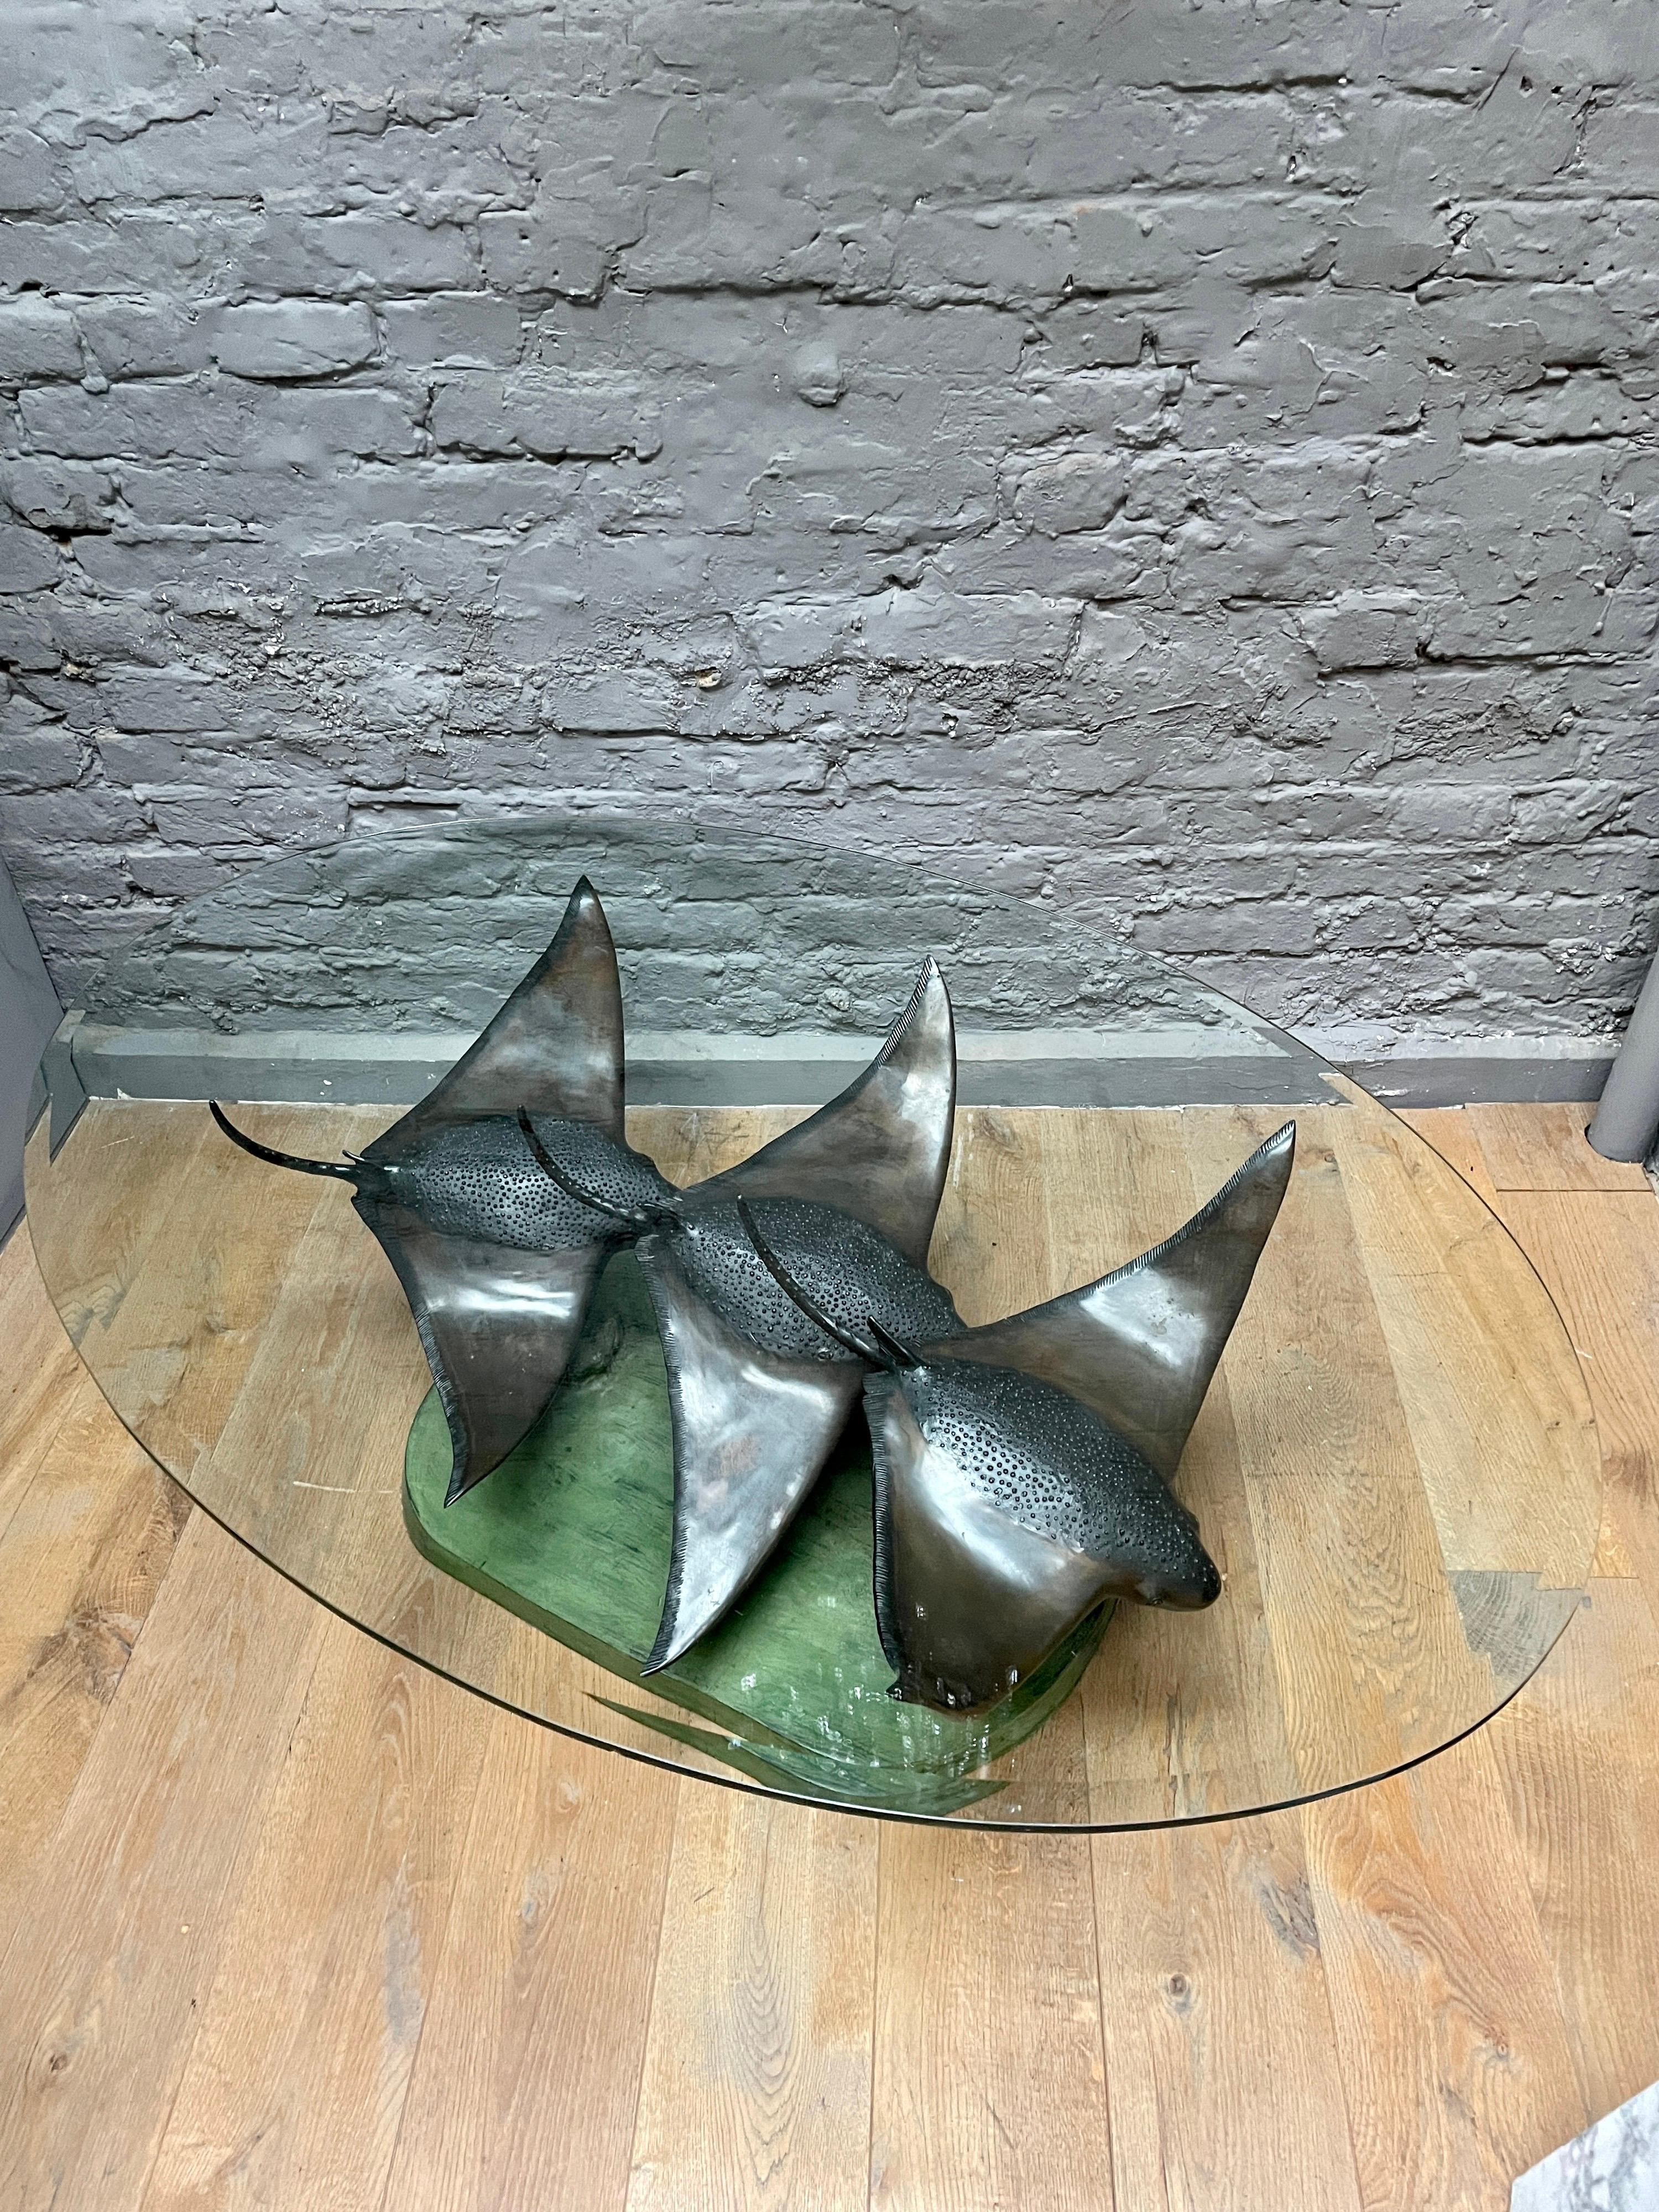 Ein ungewöhnlich großer Bronze-Couch- oder Cocktailtisch mit einer ovalen Glasplatte. Sockel mit Grünspan-Finish auf dem Meeresgrund und drei schwimmenden Stachelrochen aus patinierter Bronze. Sehr gut geworfen und Bewegung einfangend. Am Sockel vom